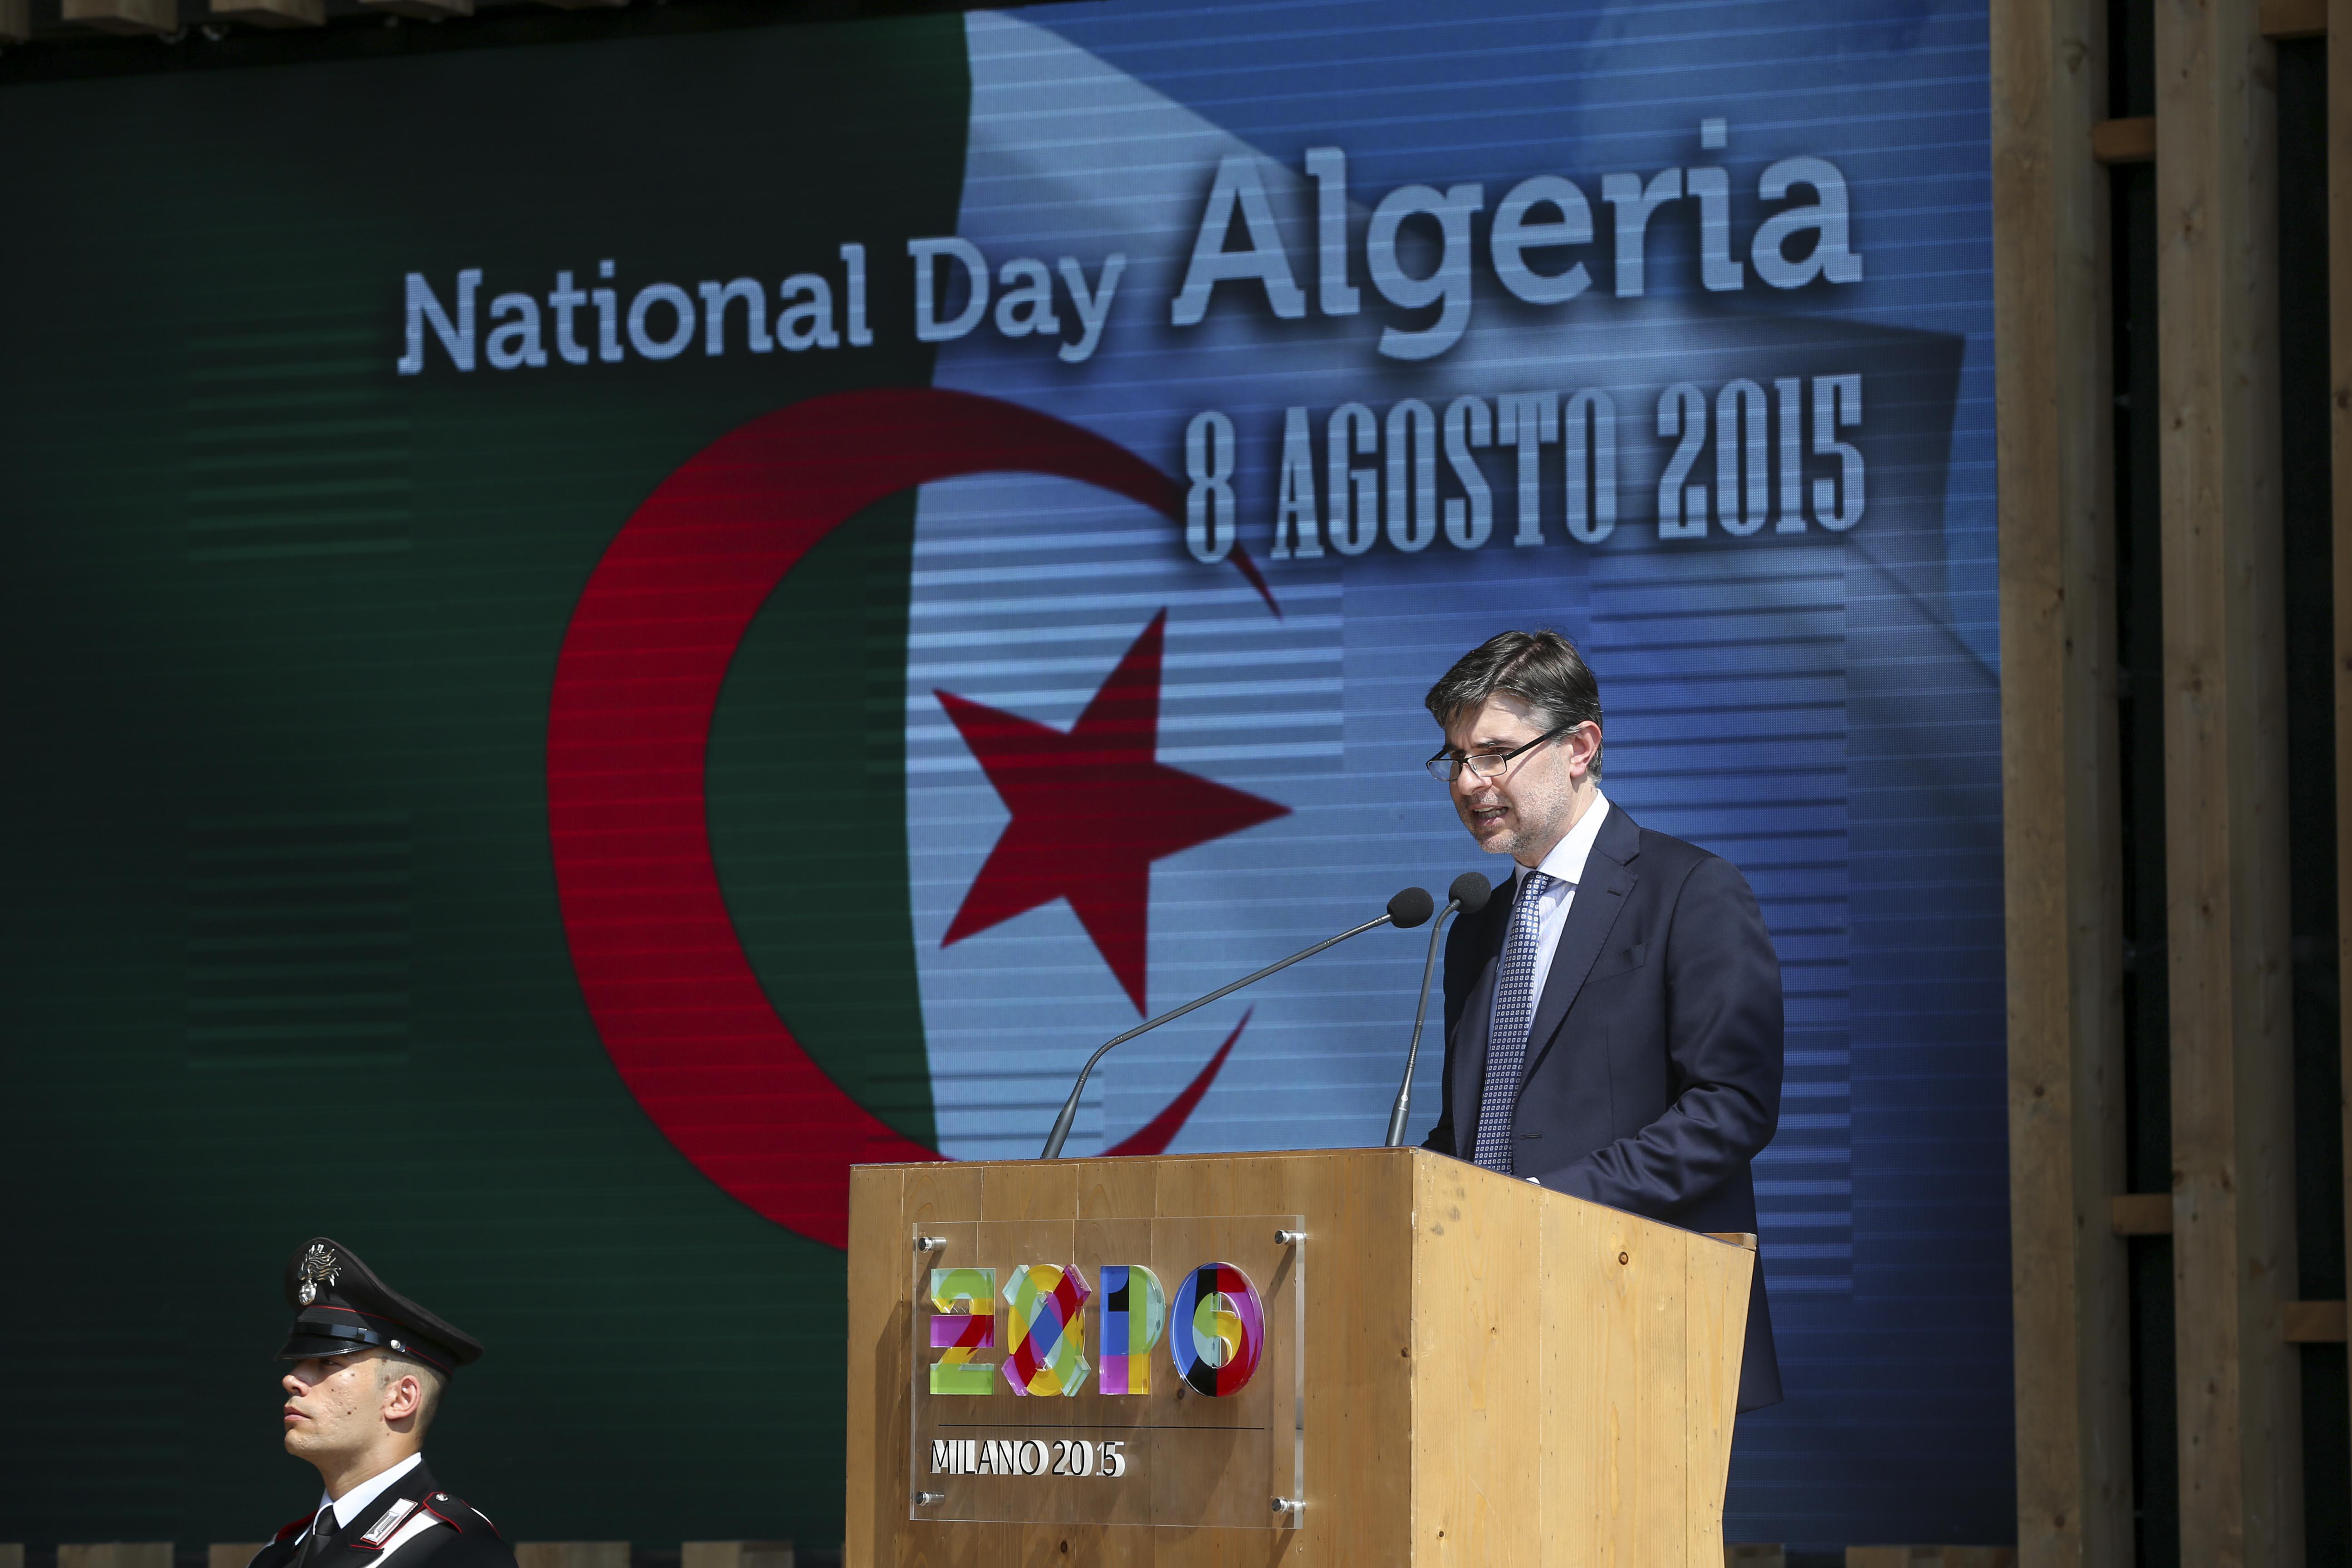 L'Algeria celebra il suo National day a Expo